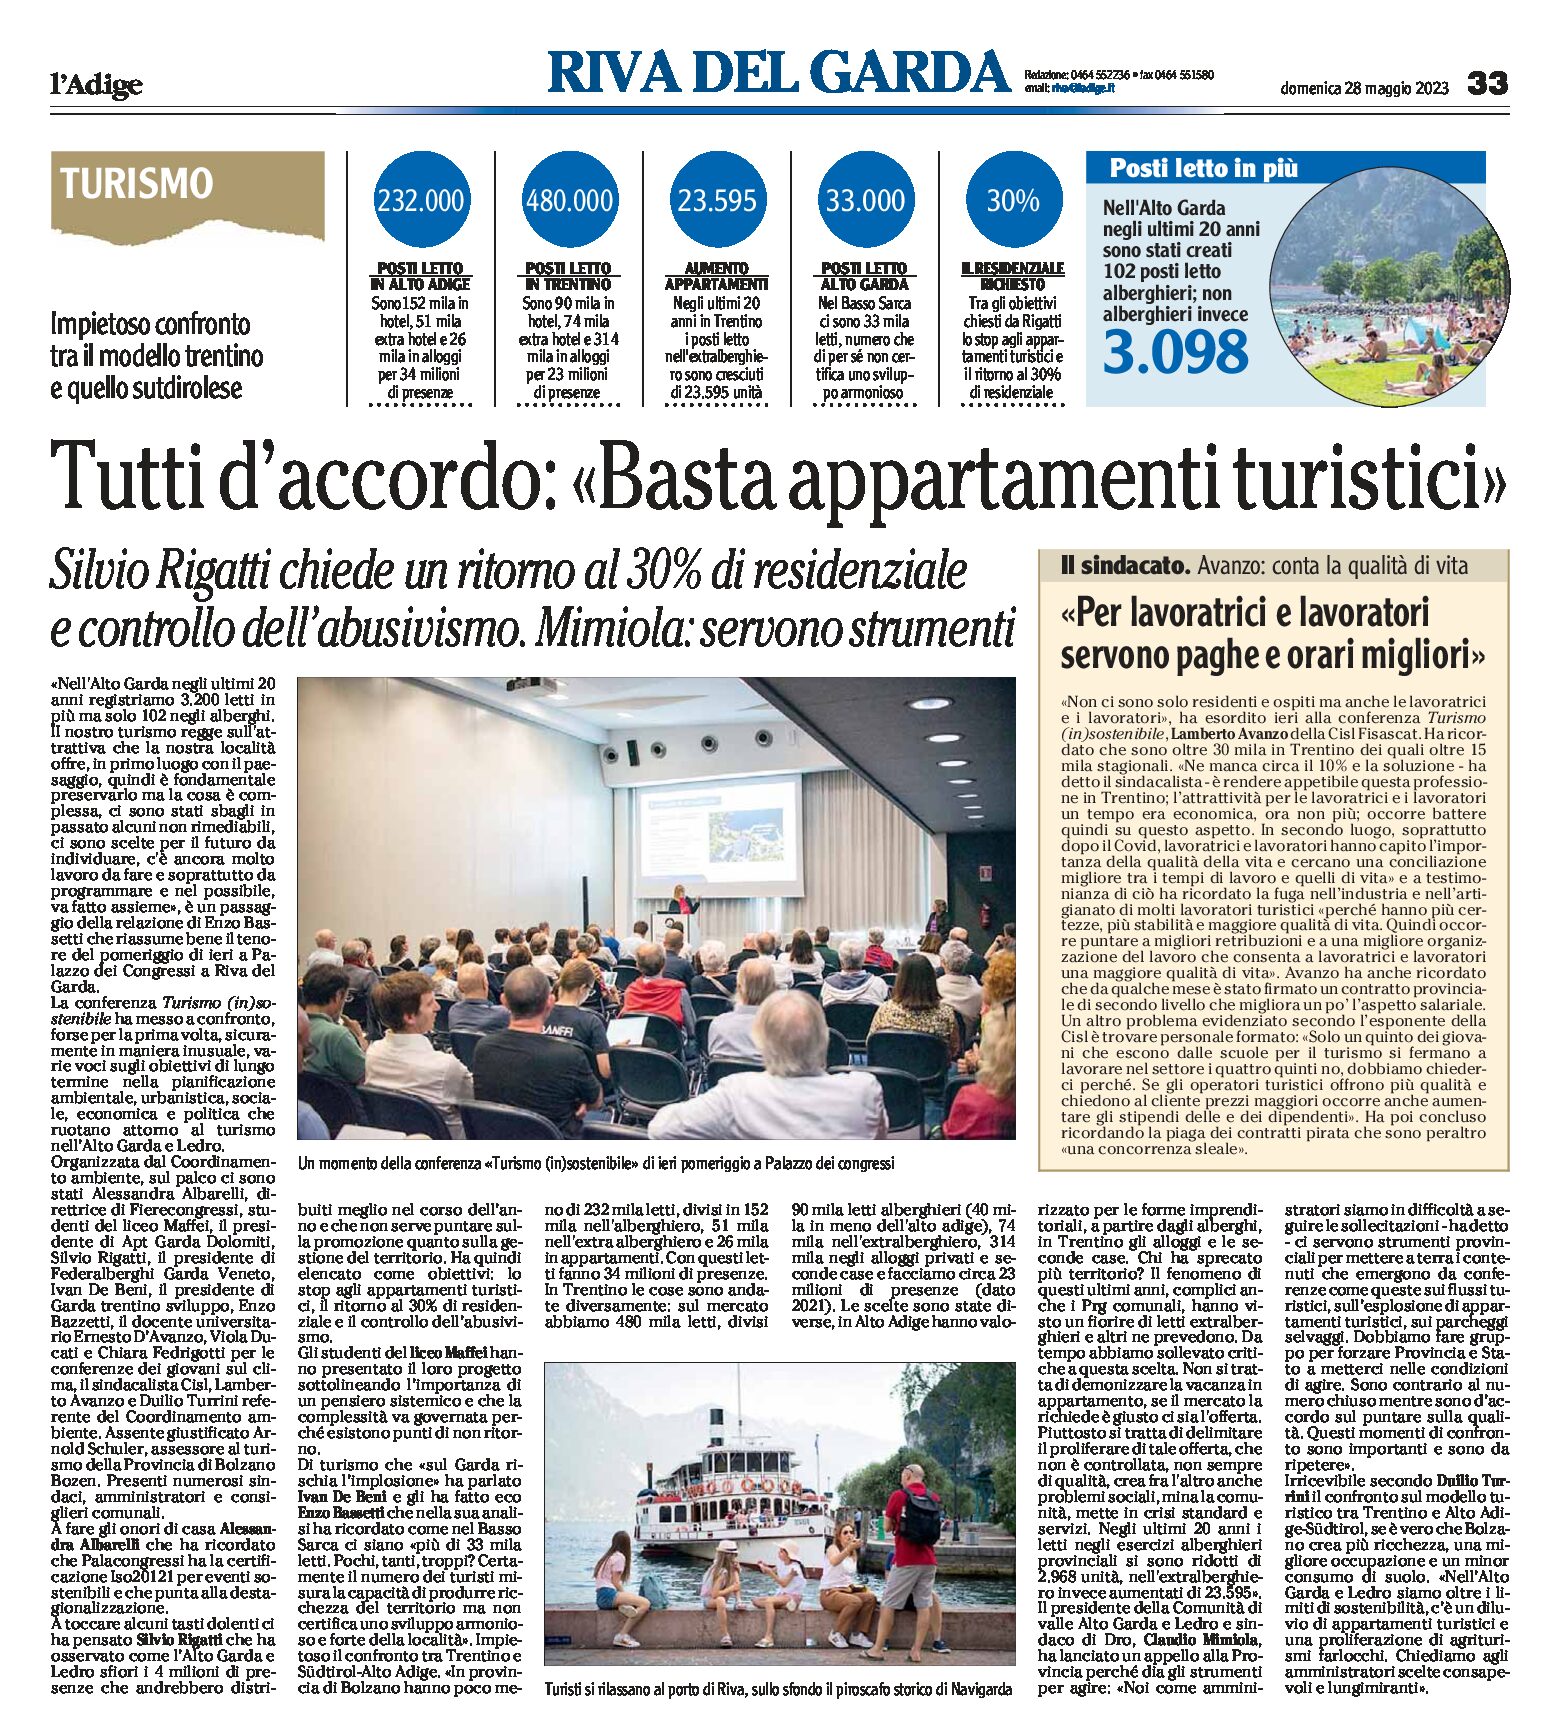 Alto Garda: a Riva, Conferenza “Turismo (in)sostenibile”, basta appartamenti turistici